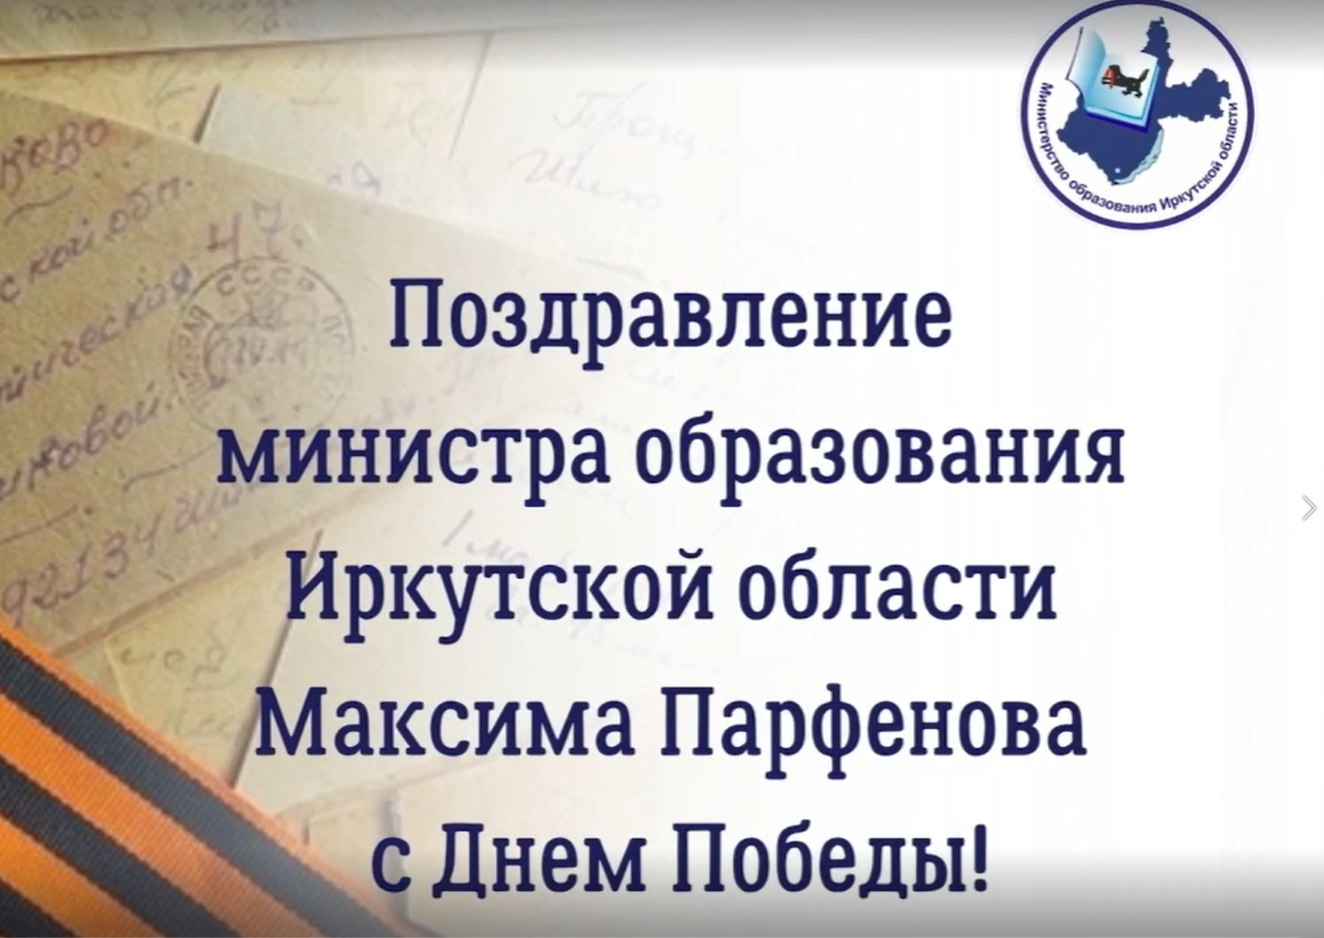 Поздравление министра образования Иркутской области Максима Парфенова с Днем Победы.